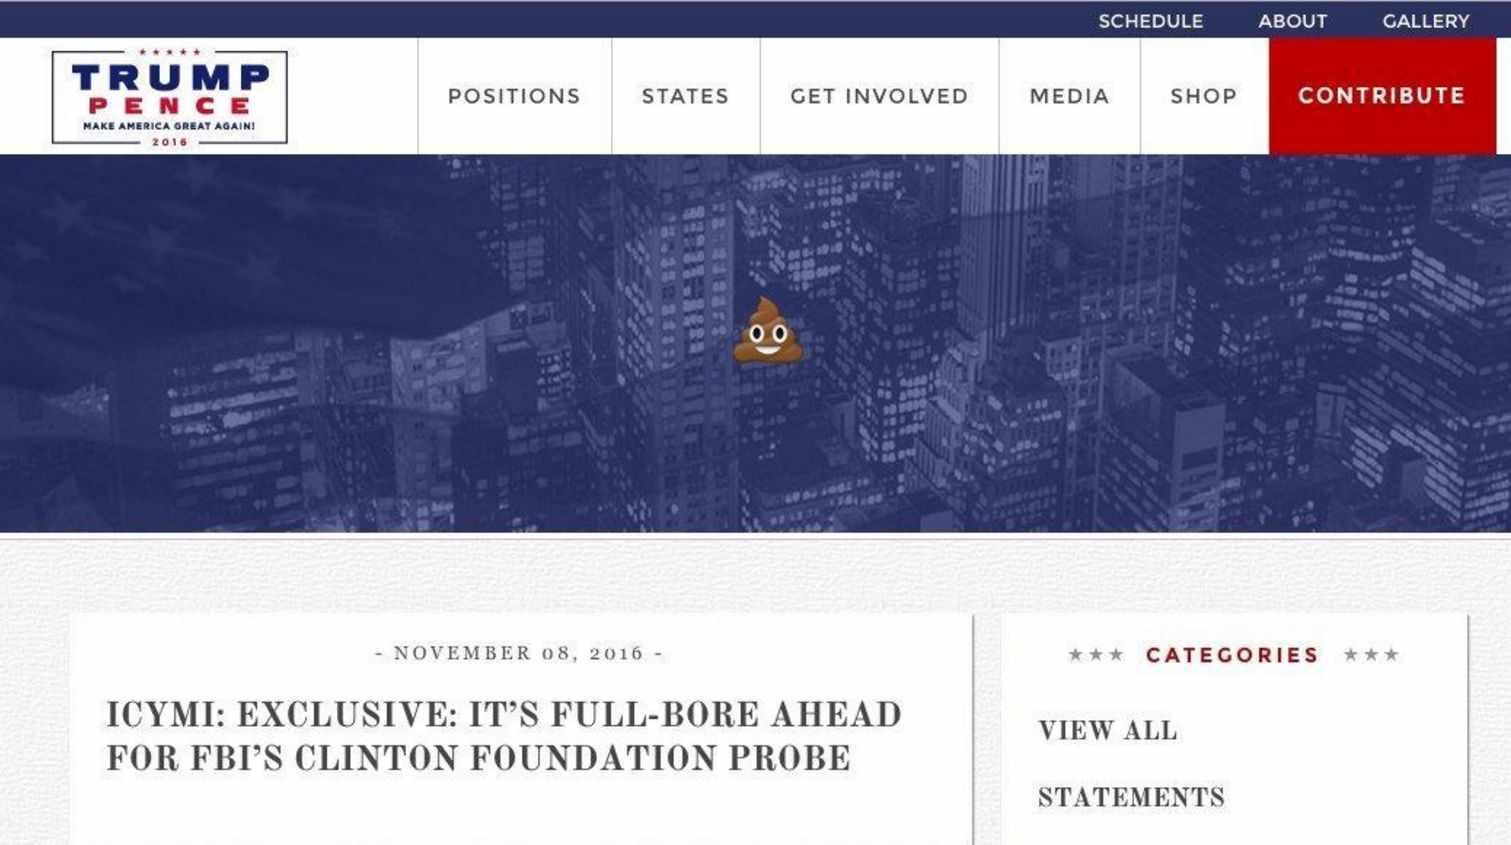 'Hackean' la web de la campaña de Trump durante horas